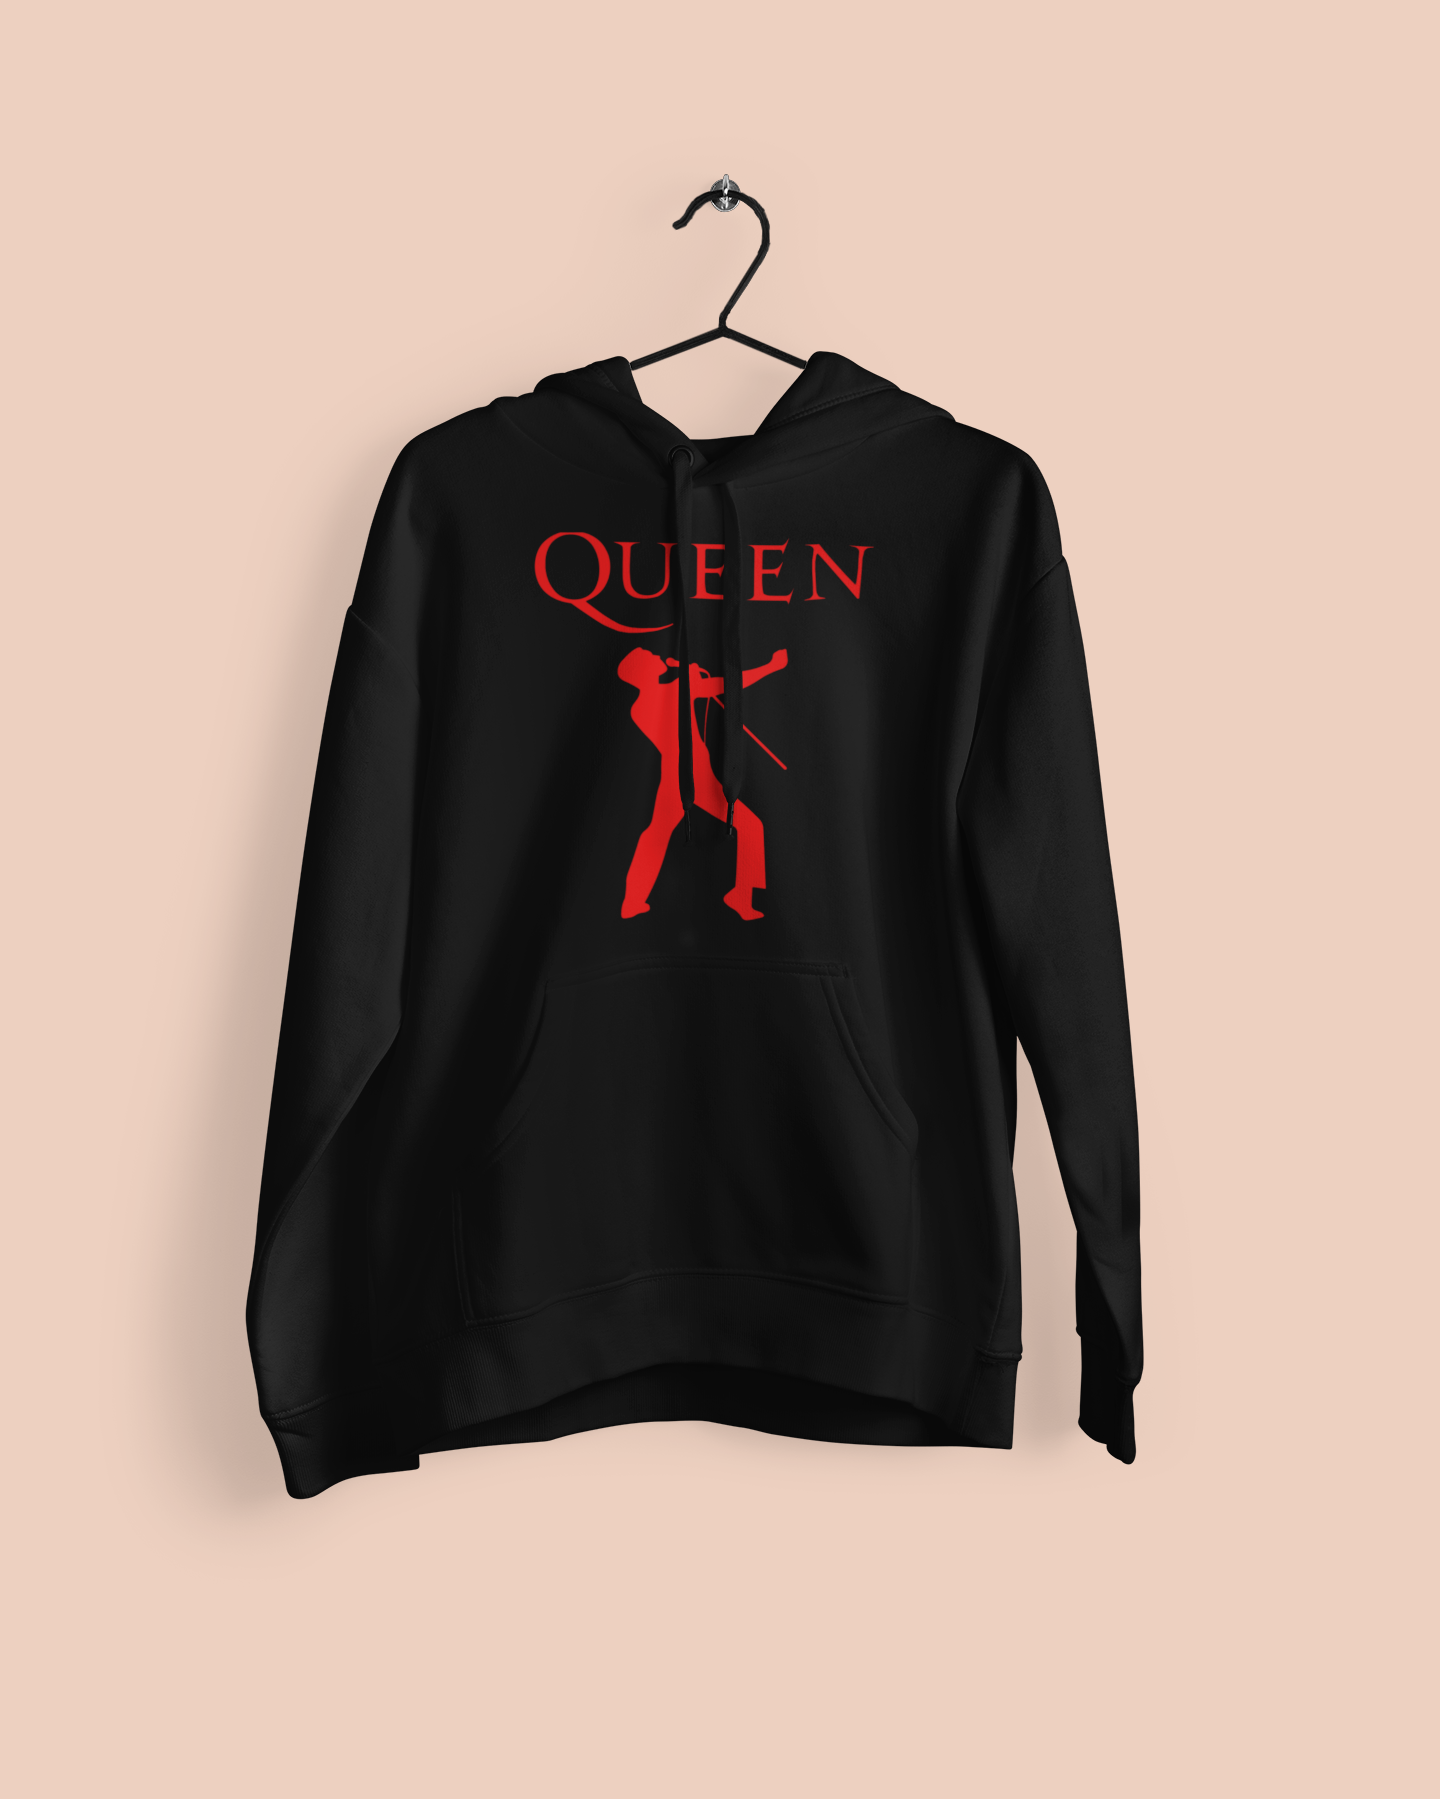 Moletom "Queen" Freddy Mercury - Música